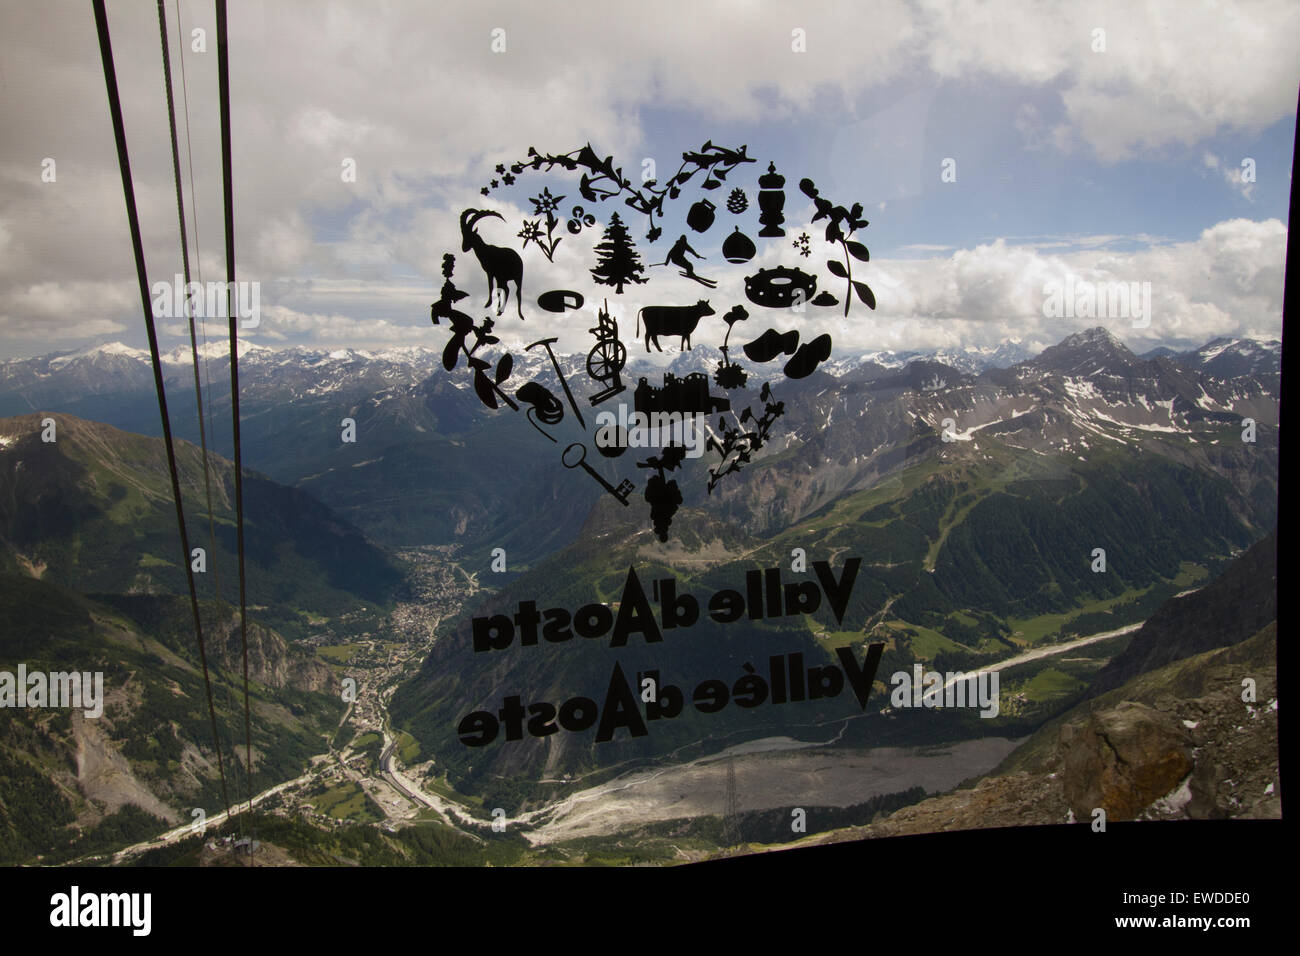 Courmayeur, Italia, 23 giugno 2015. Una valle d'Aosta logo sulla finestra della funivia gondola si sovrappone la Valle d'Aosta paesaggio. Il nuovo Skyway funivia che collega la città di Courmayeur a Punta Helbronner (3,466 m) nel massiccio del Monte Bianco. Foto Stock